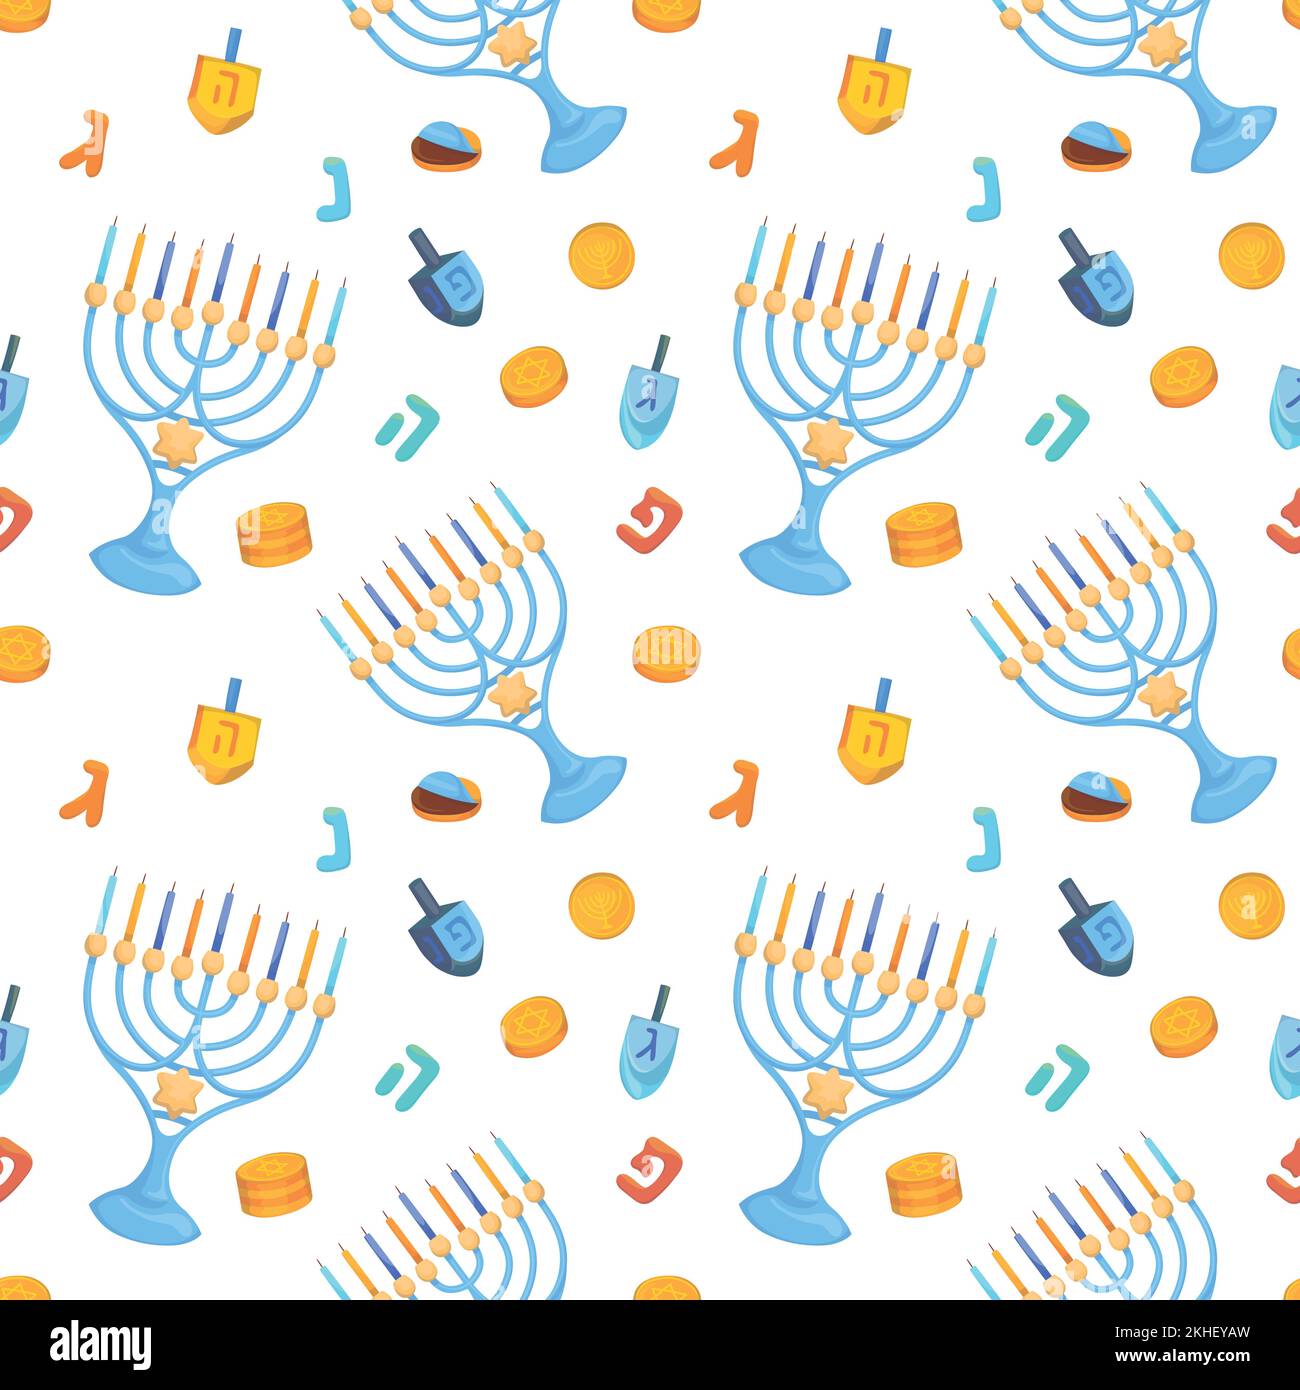 Farbenfroher Hintergrund mit sich wiederholenden Mustern für das jüdische Festival von Hanukka, bestehend aus einfachen Vektorbildern. Stock Vektor